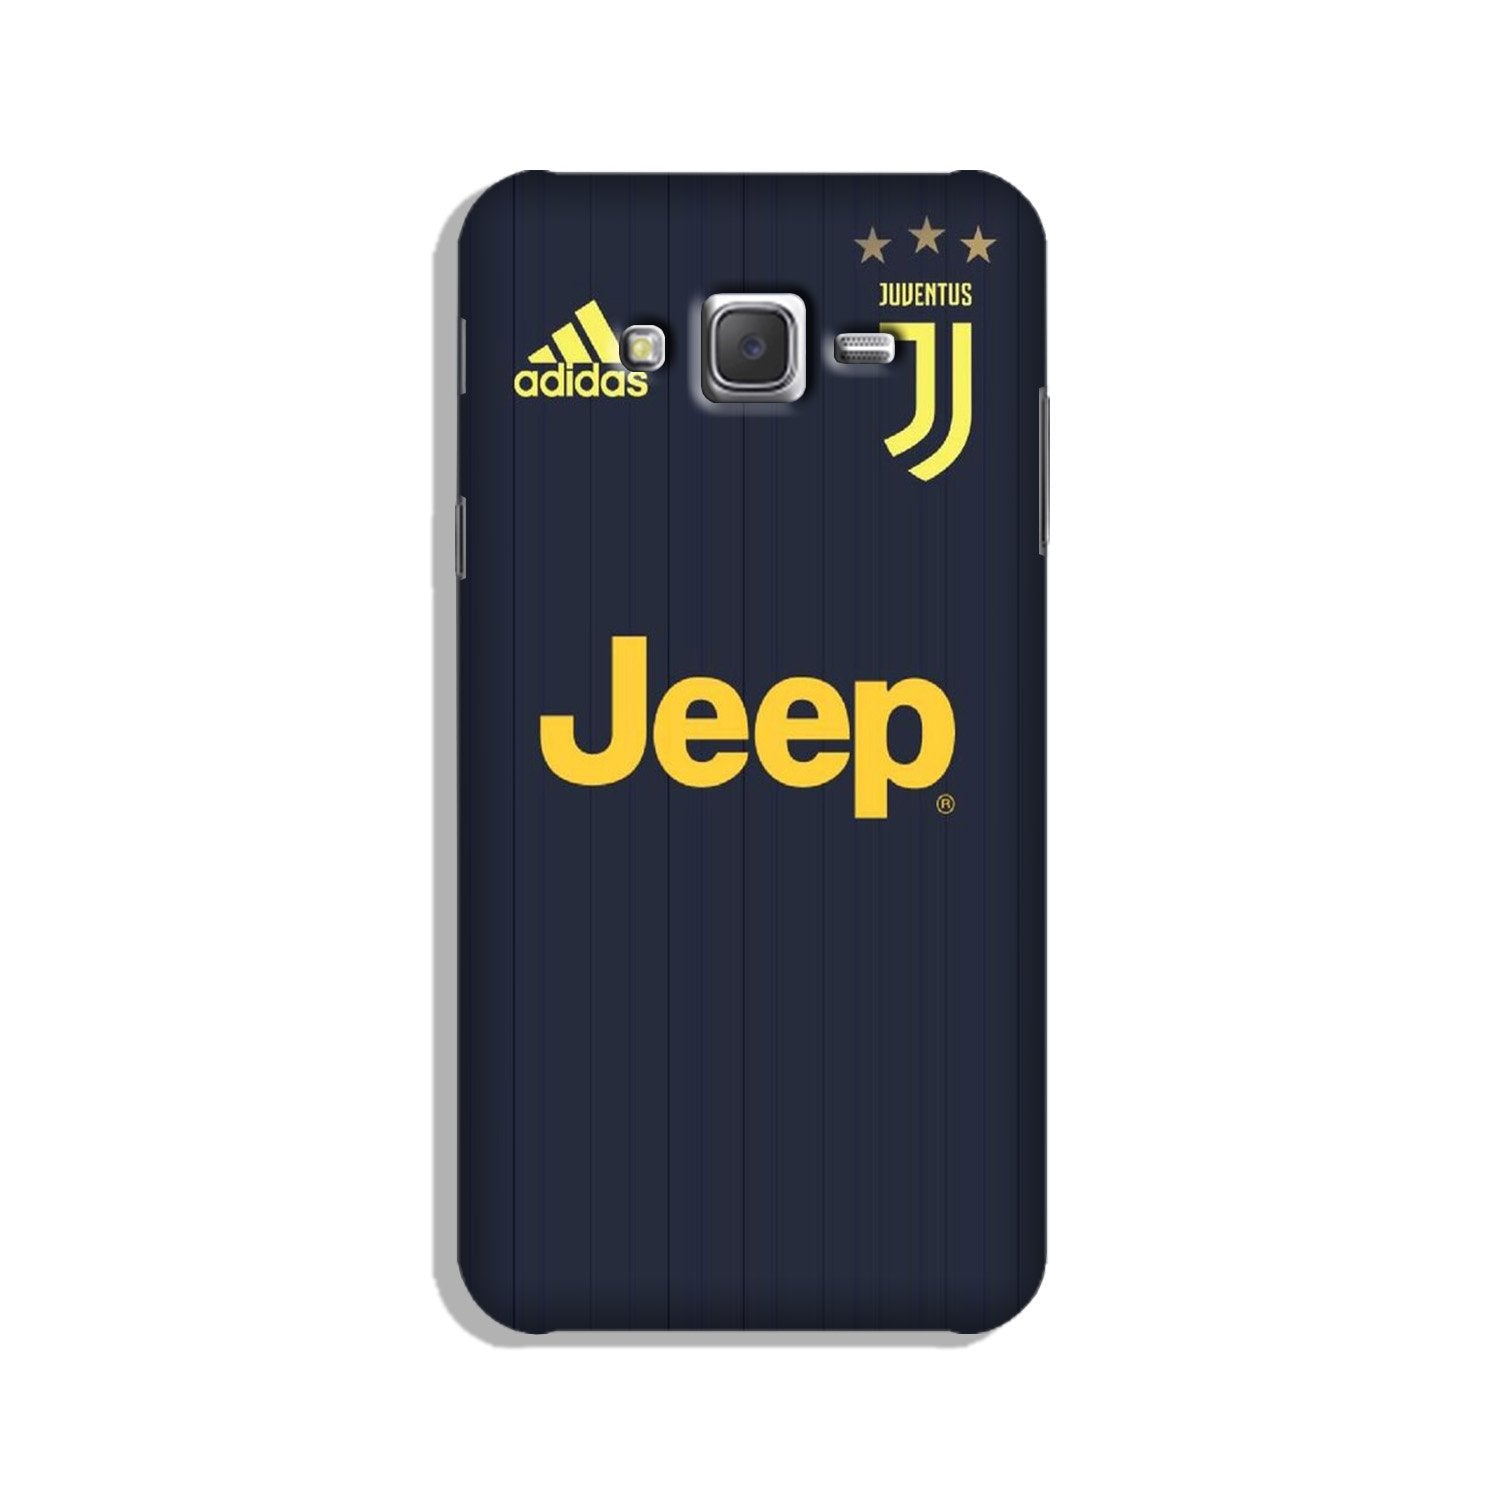 Jeep Juventus Case for Galaxy E7  (Design - 161)